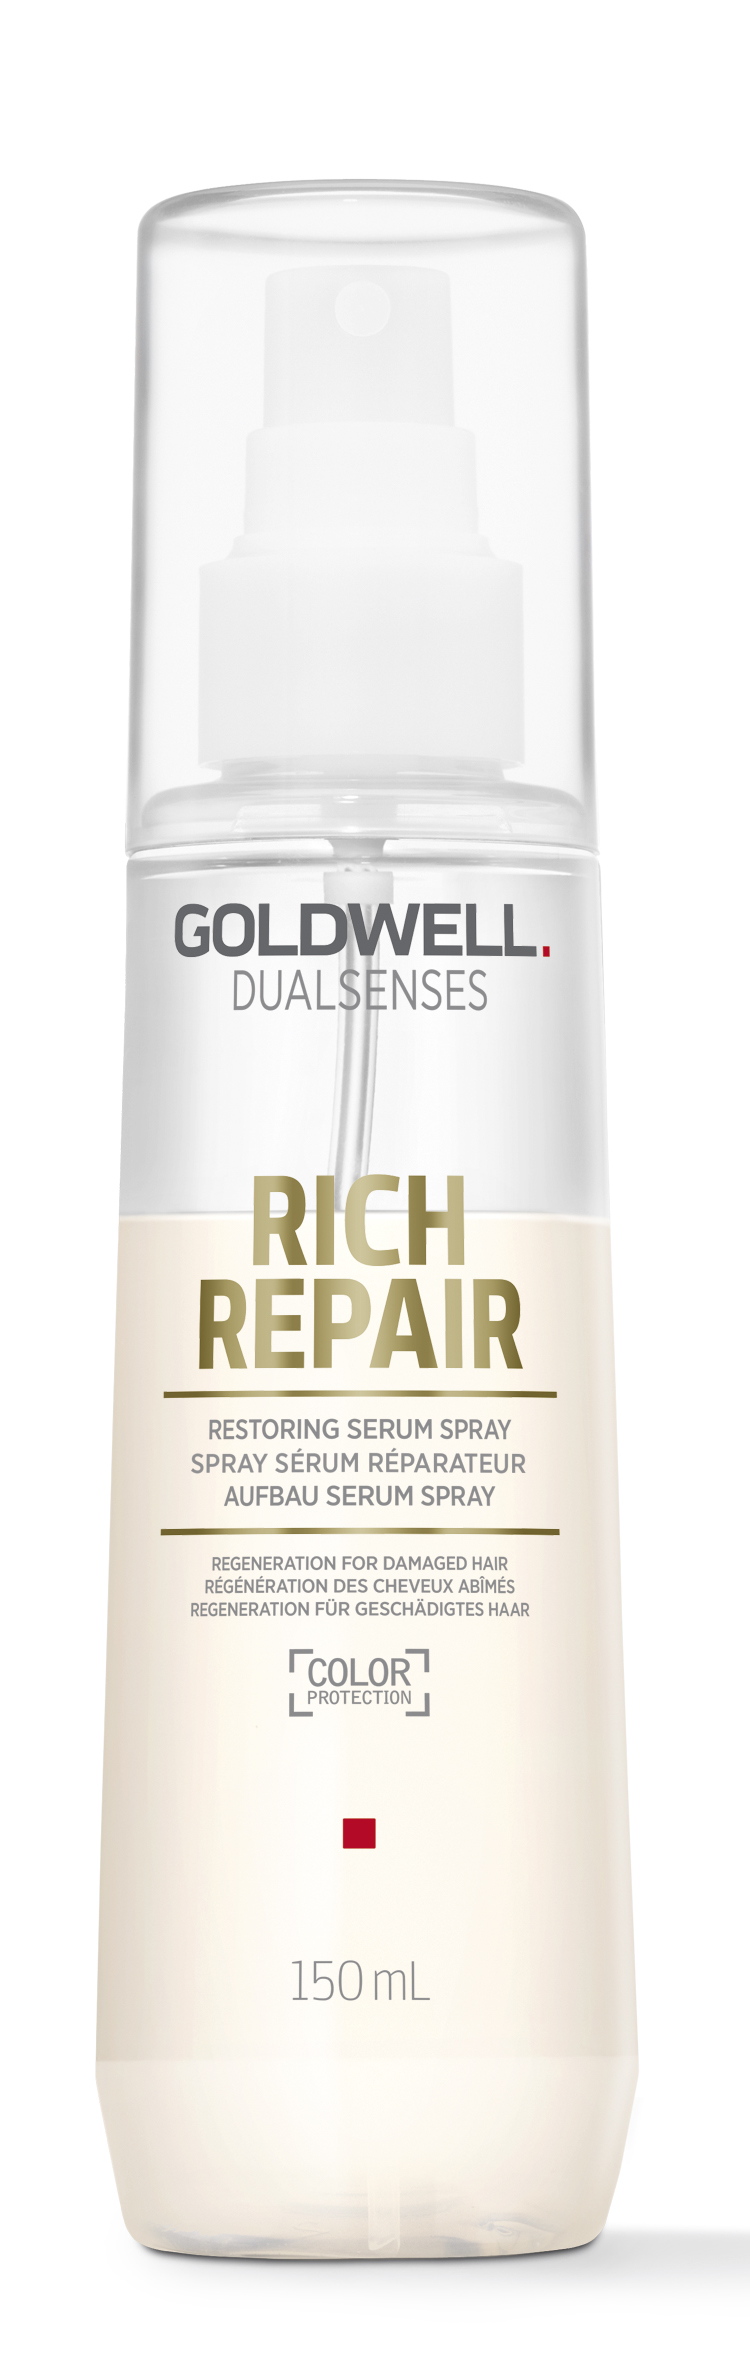 Dual Senses Rich Repair Serum Spray 150ml